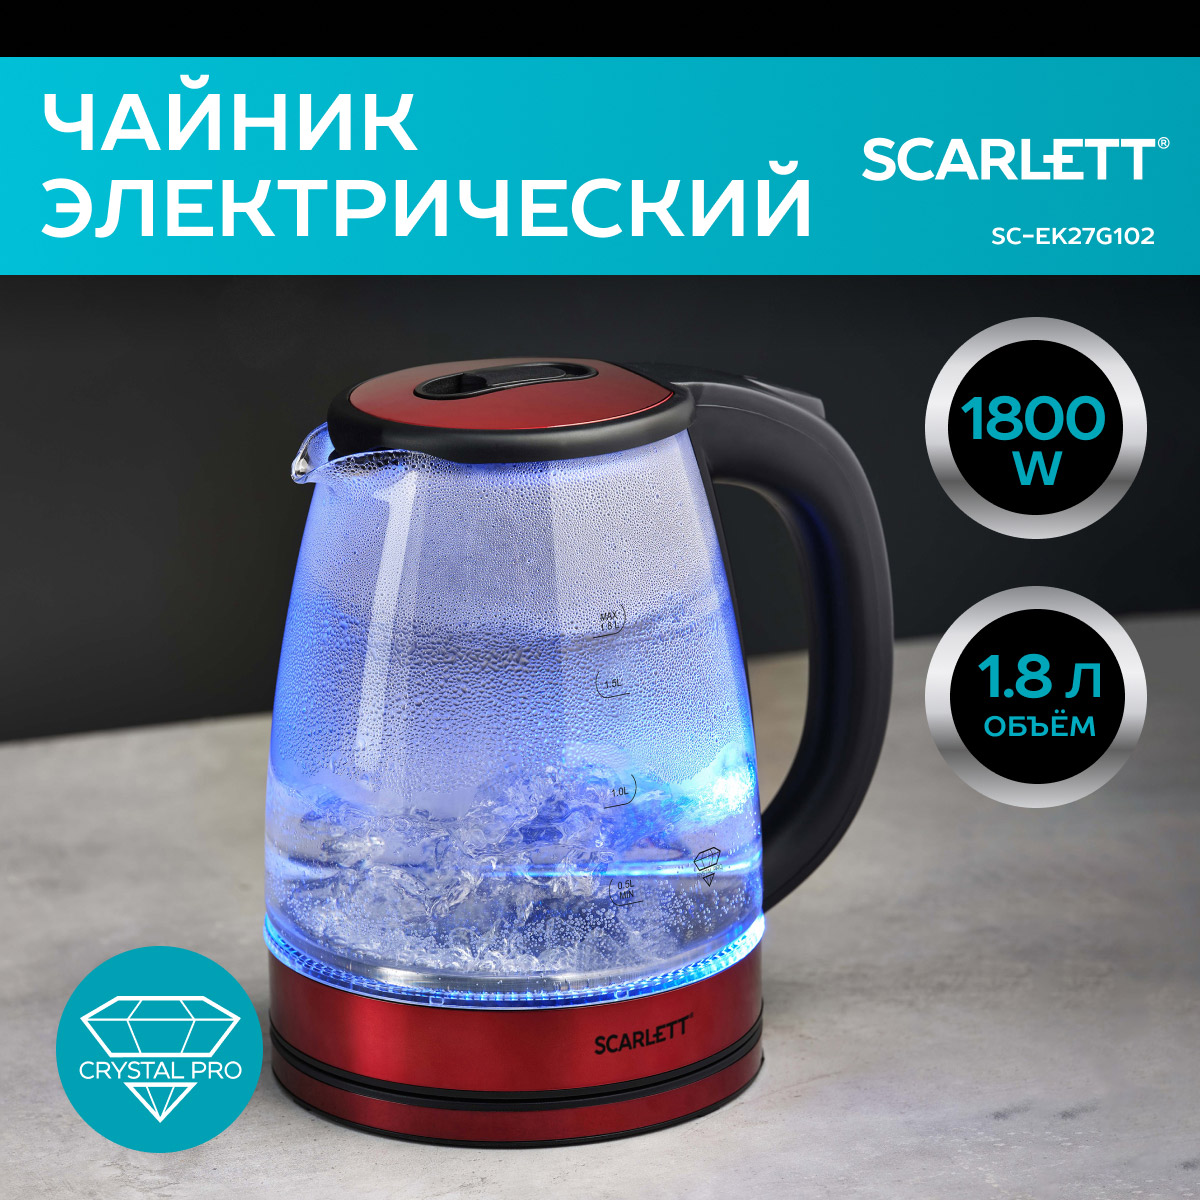 Чайник электрический Scarlett SC-EK27G102 1.8 л красный чайник 2 5 л агнесс красный горошек индукционное дно свисток 907 072